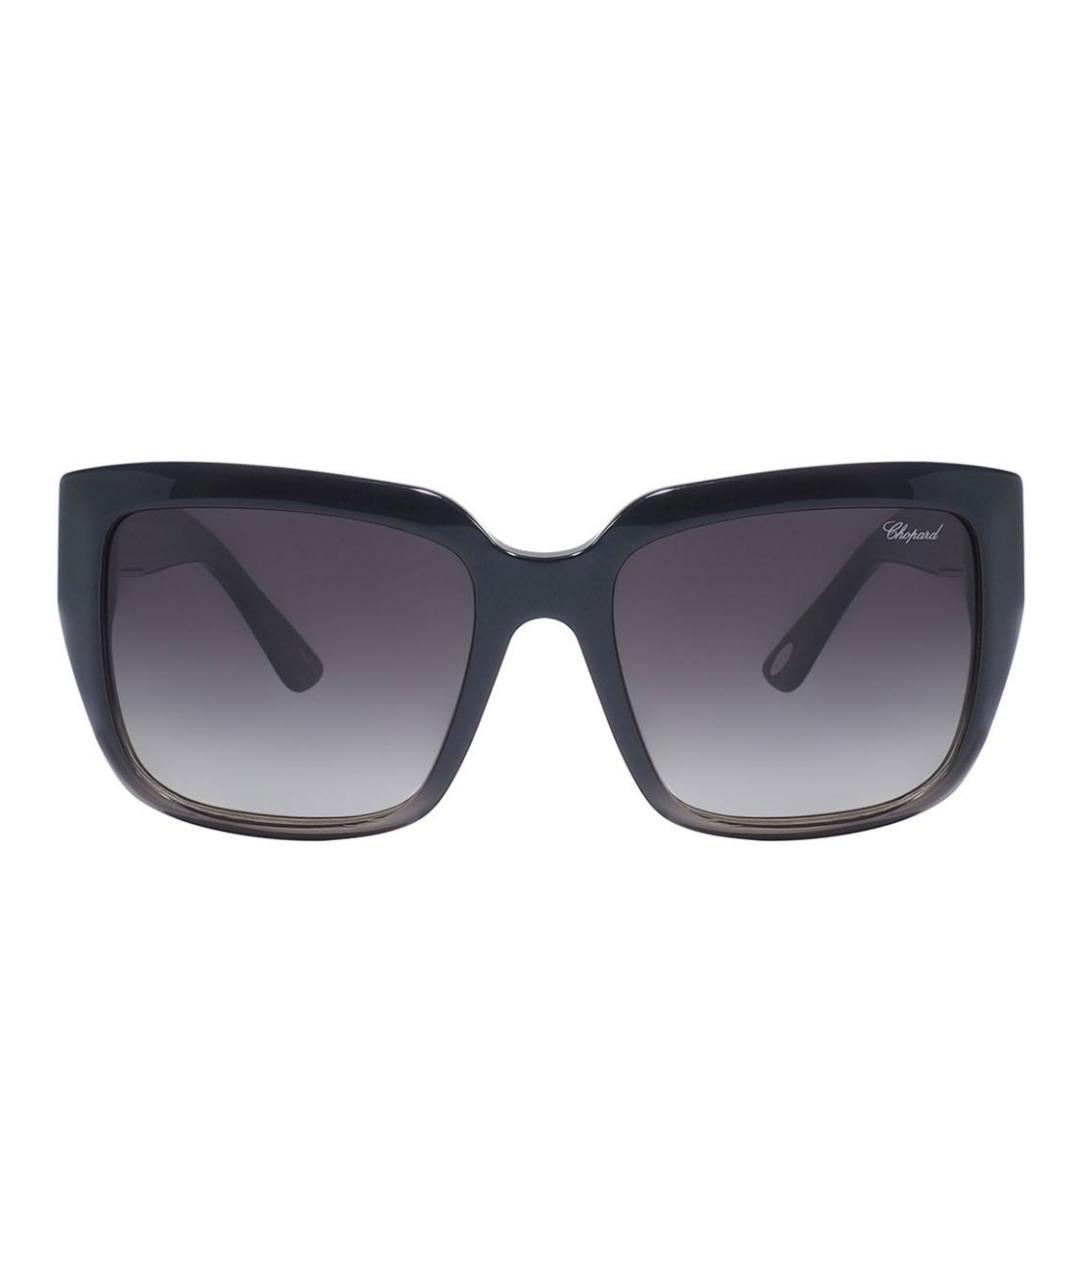 CHOPARD Антрацитовые пластиковые солнцезащитные очки, фото 1